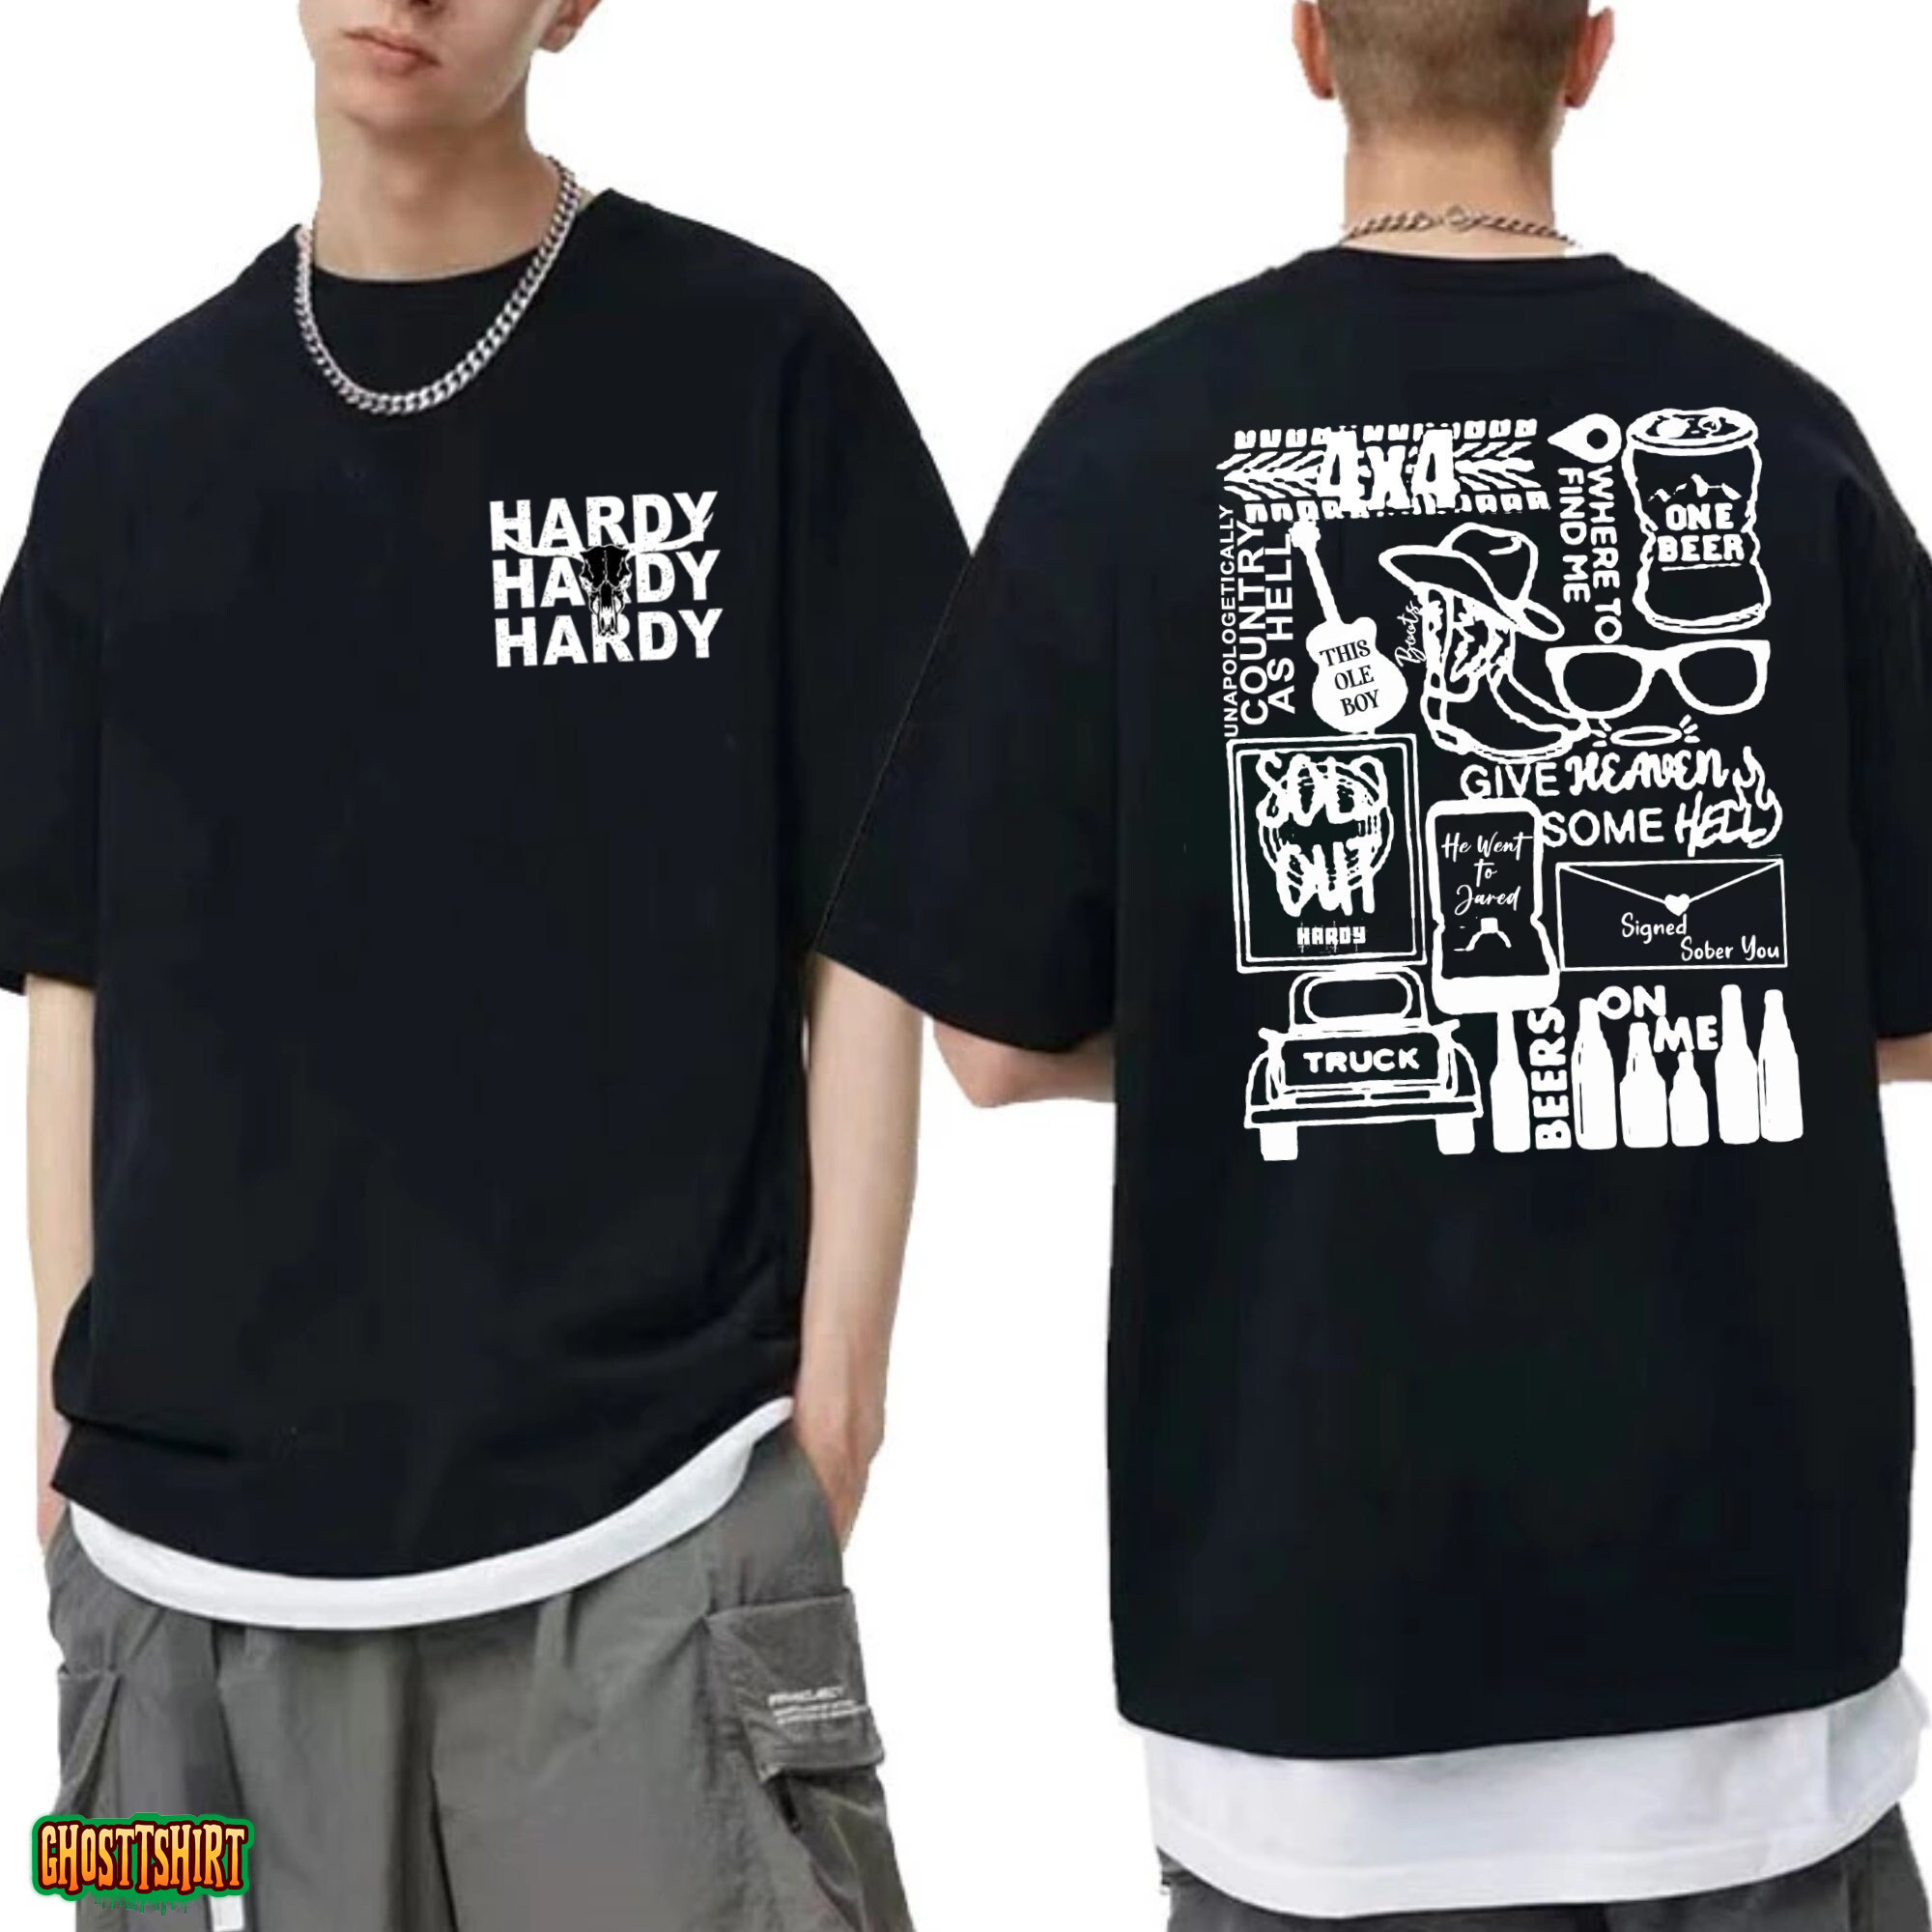 Hardy Album Tracklist Shirt